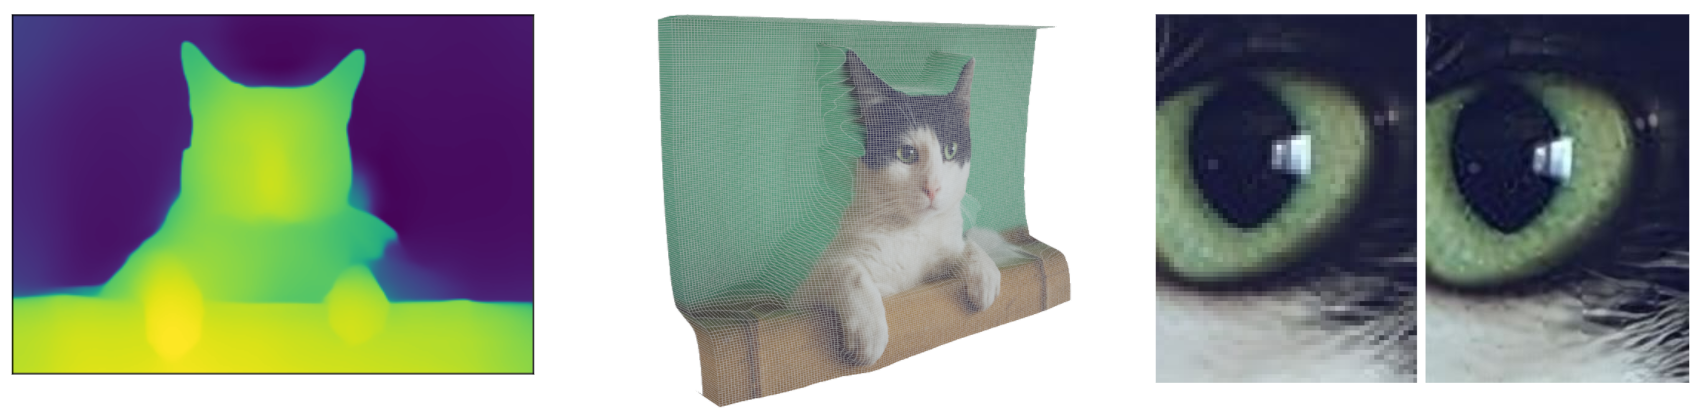 Эксперименты на кошках: карта глубины (MiDaS), наложенная на фотографию в 3D, а также детали увеличенного изображения (ESRGAN)